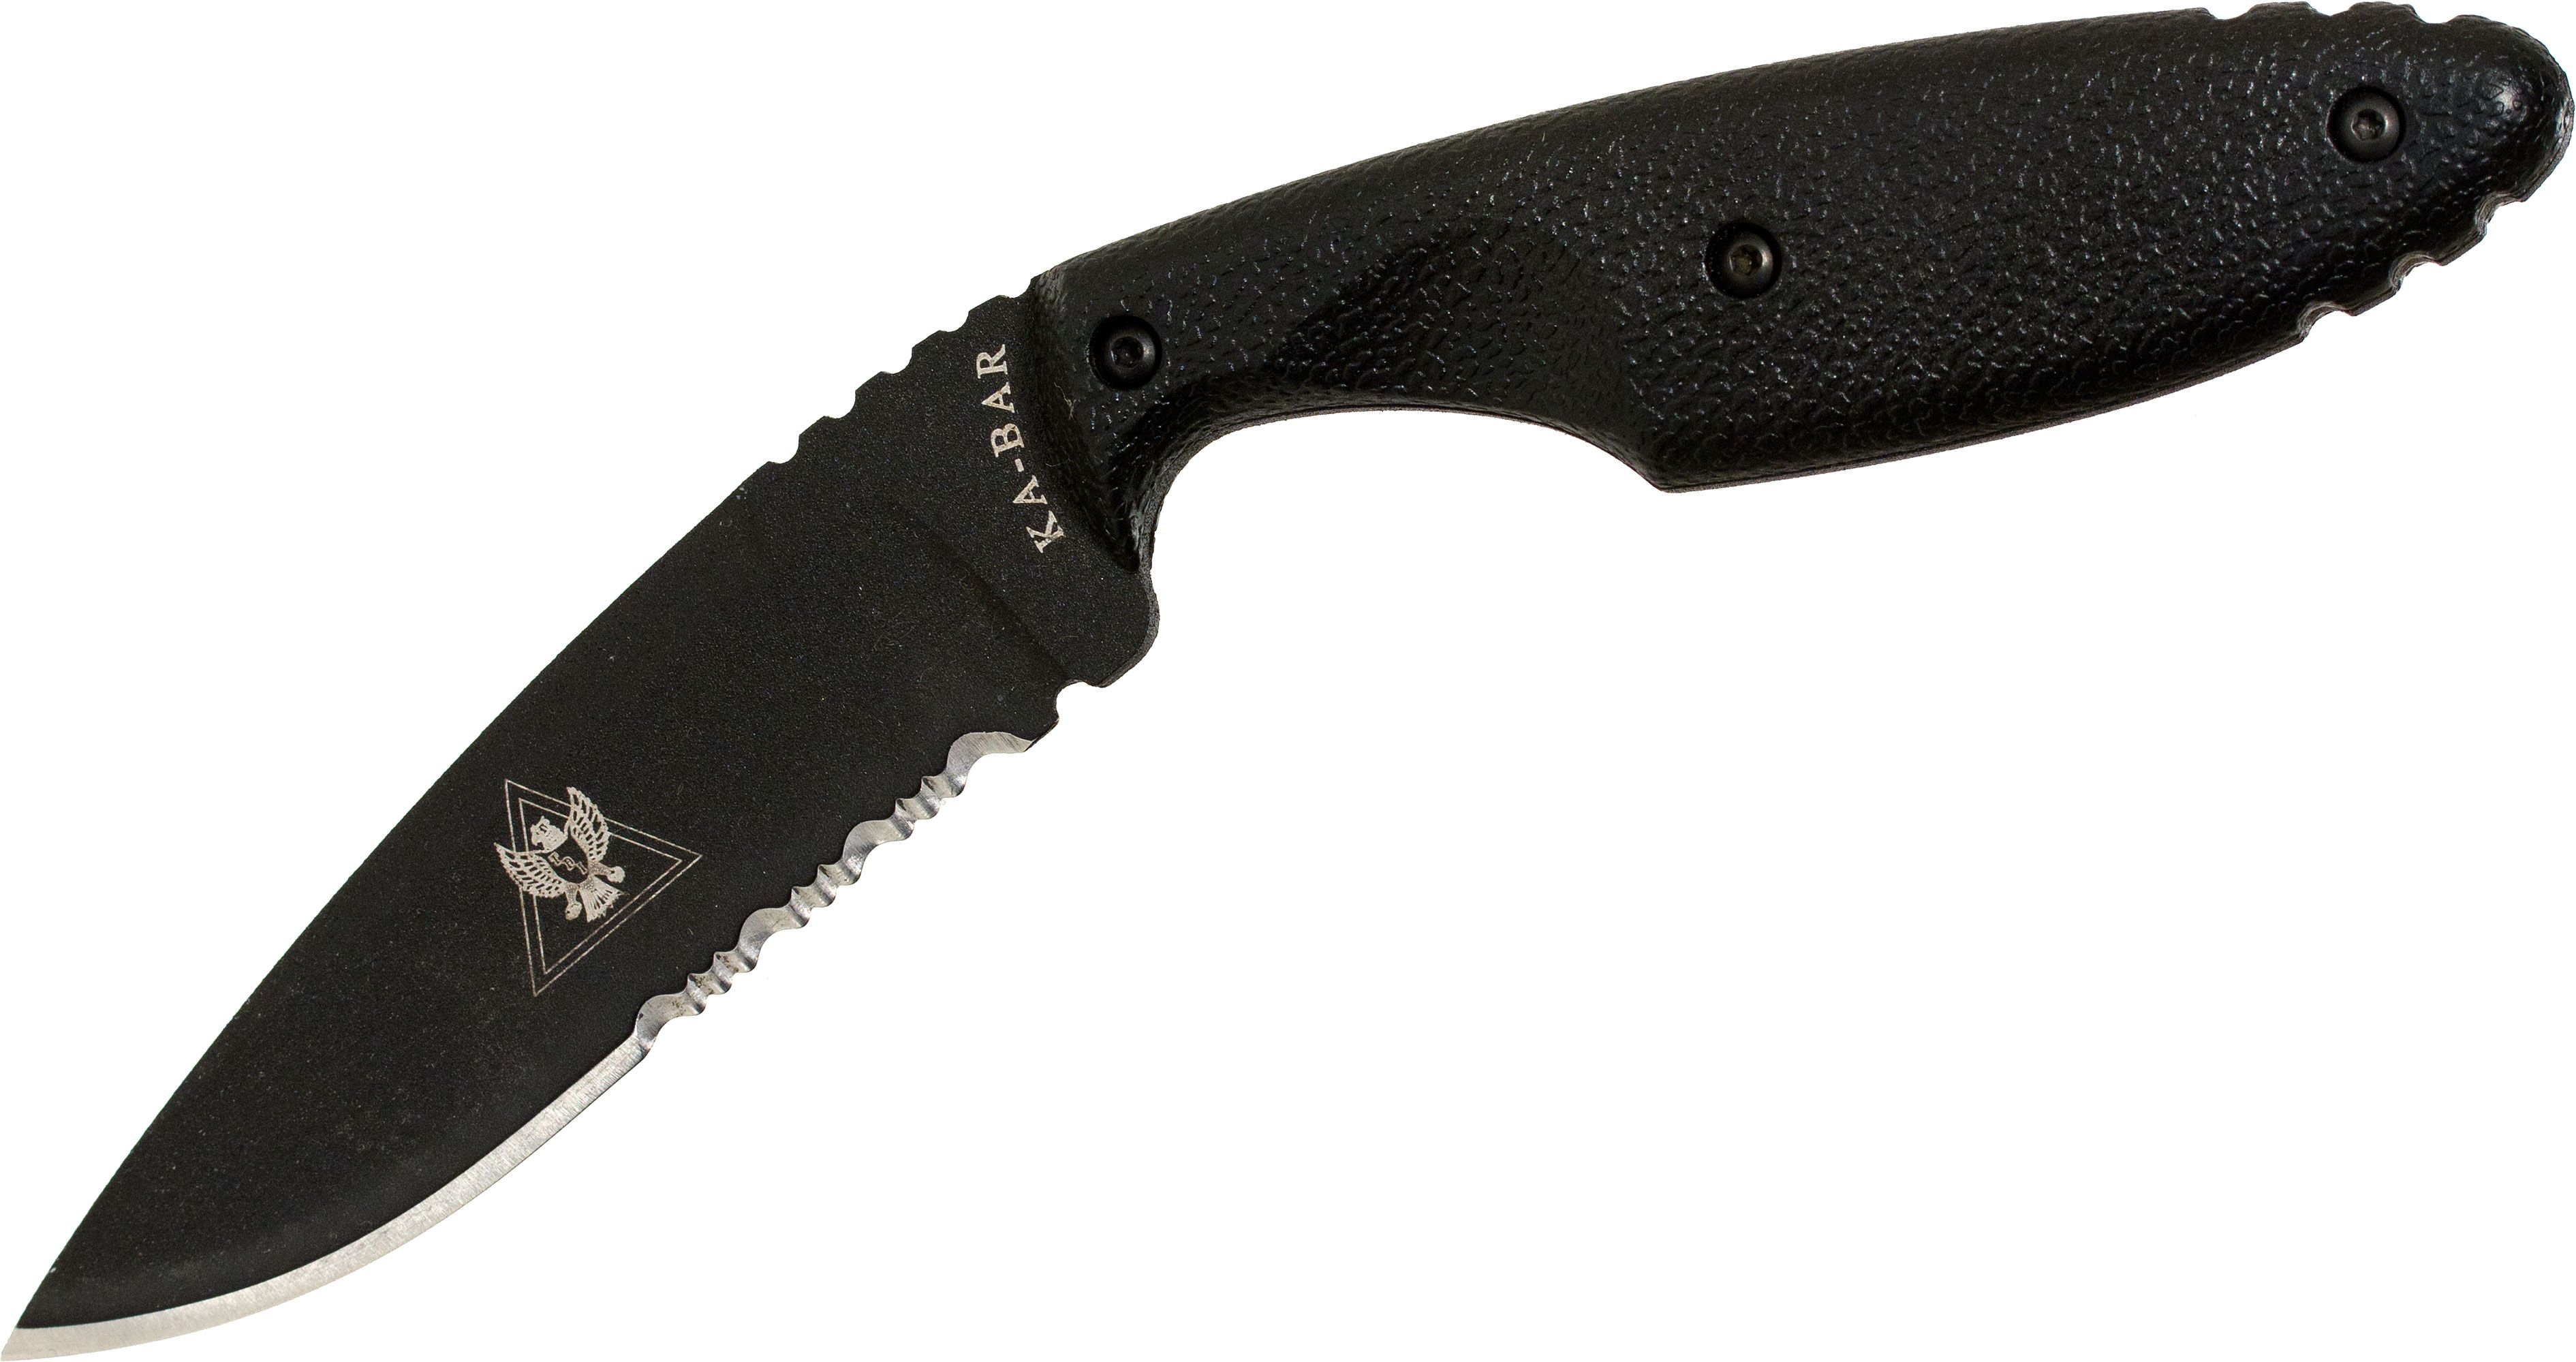 KA-BAR 1480CLIP Metal Belt Clip for TDI Knives - KnifeCenter